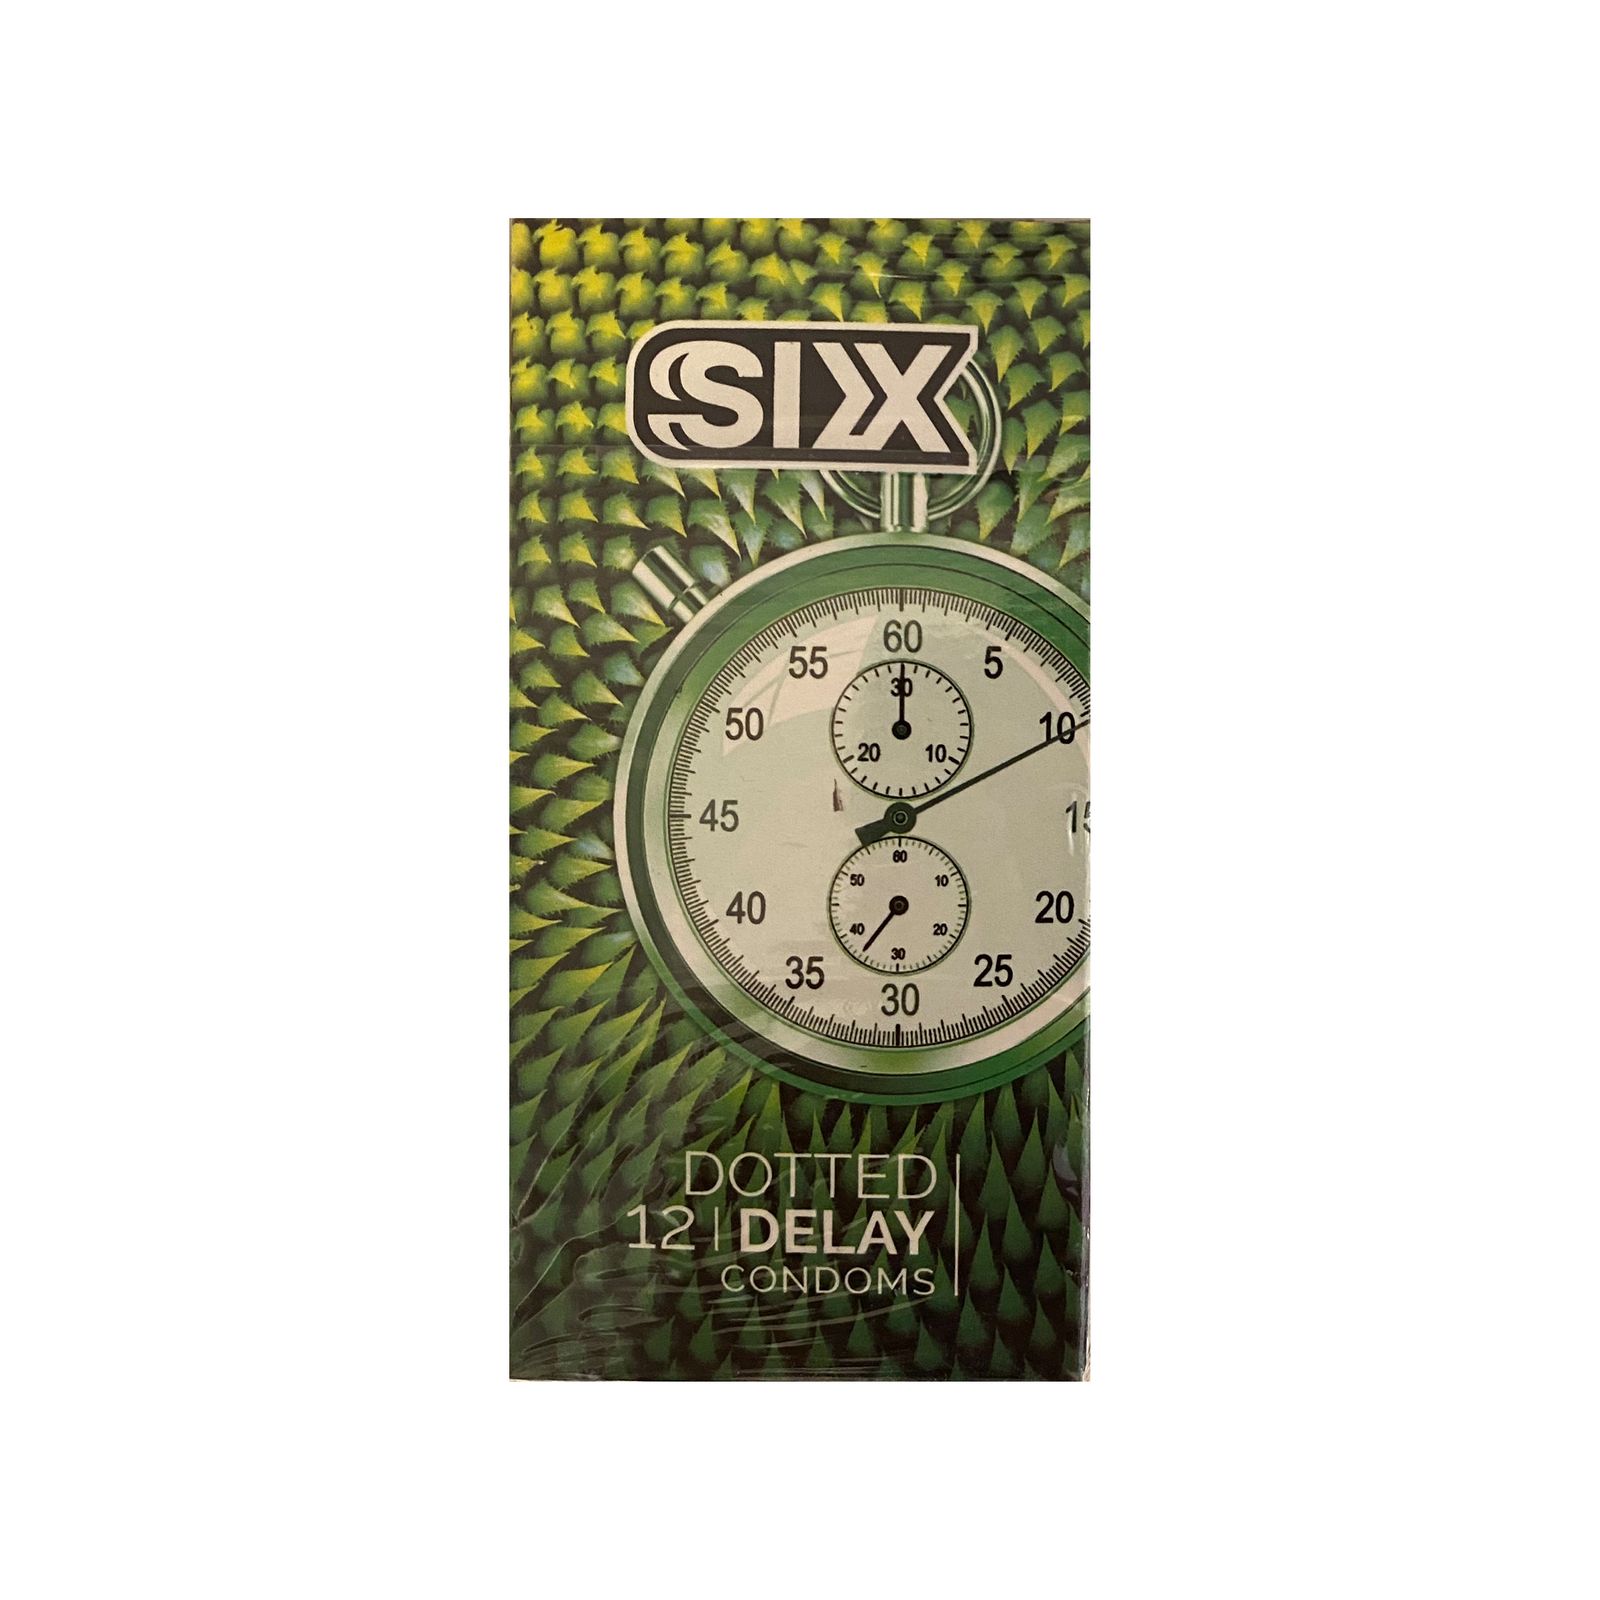 کاندوم سیکس مدل DottedDelay بسته 12 عددی -  - 2